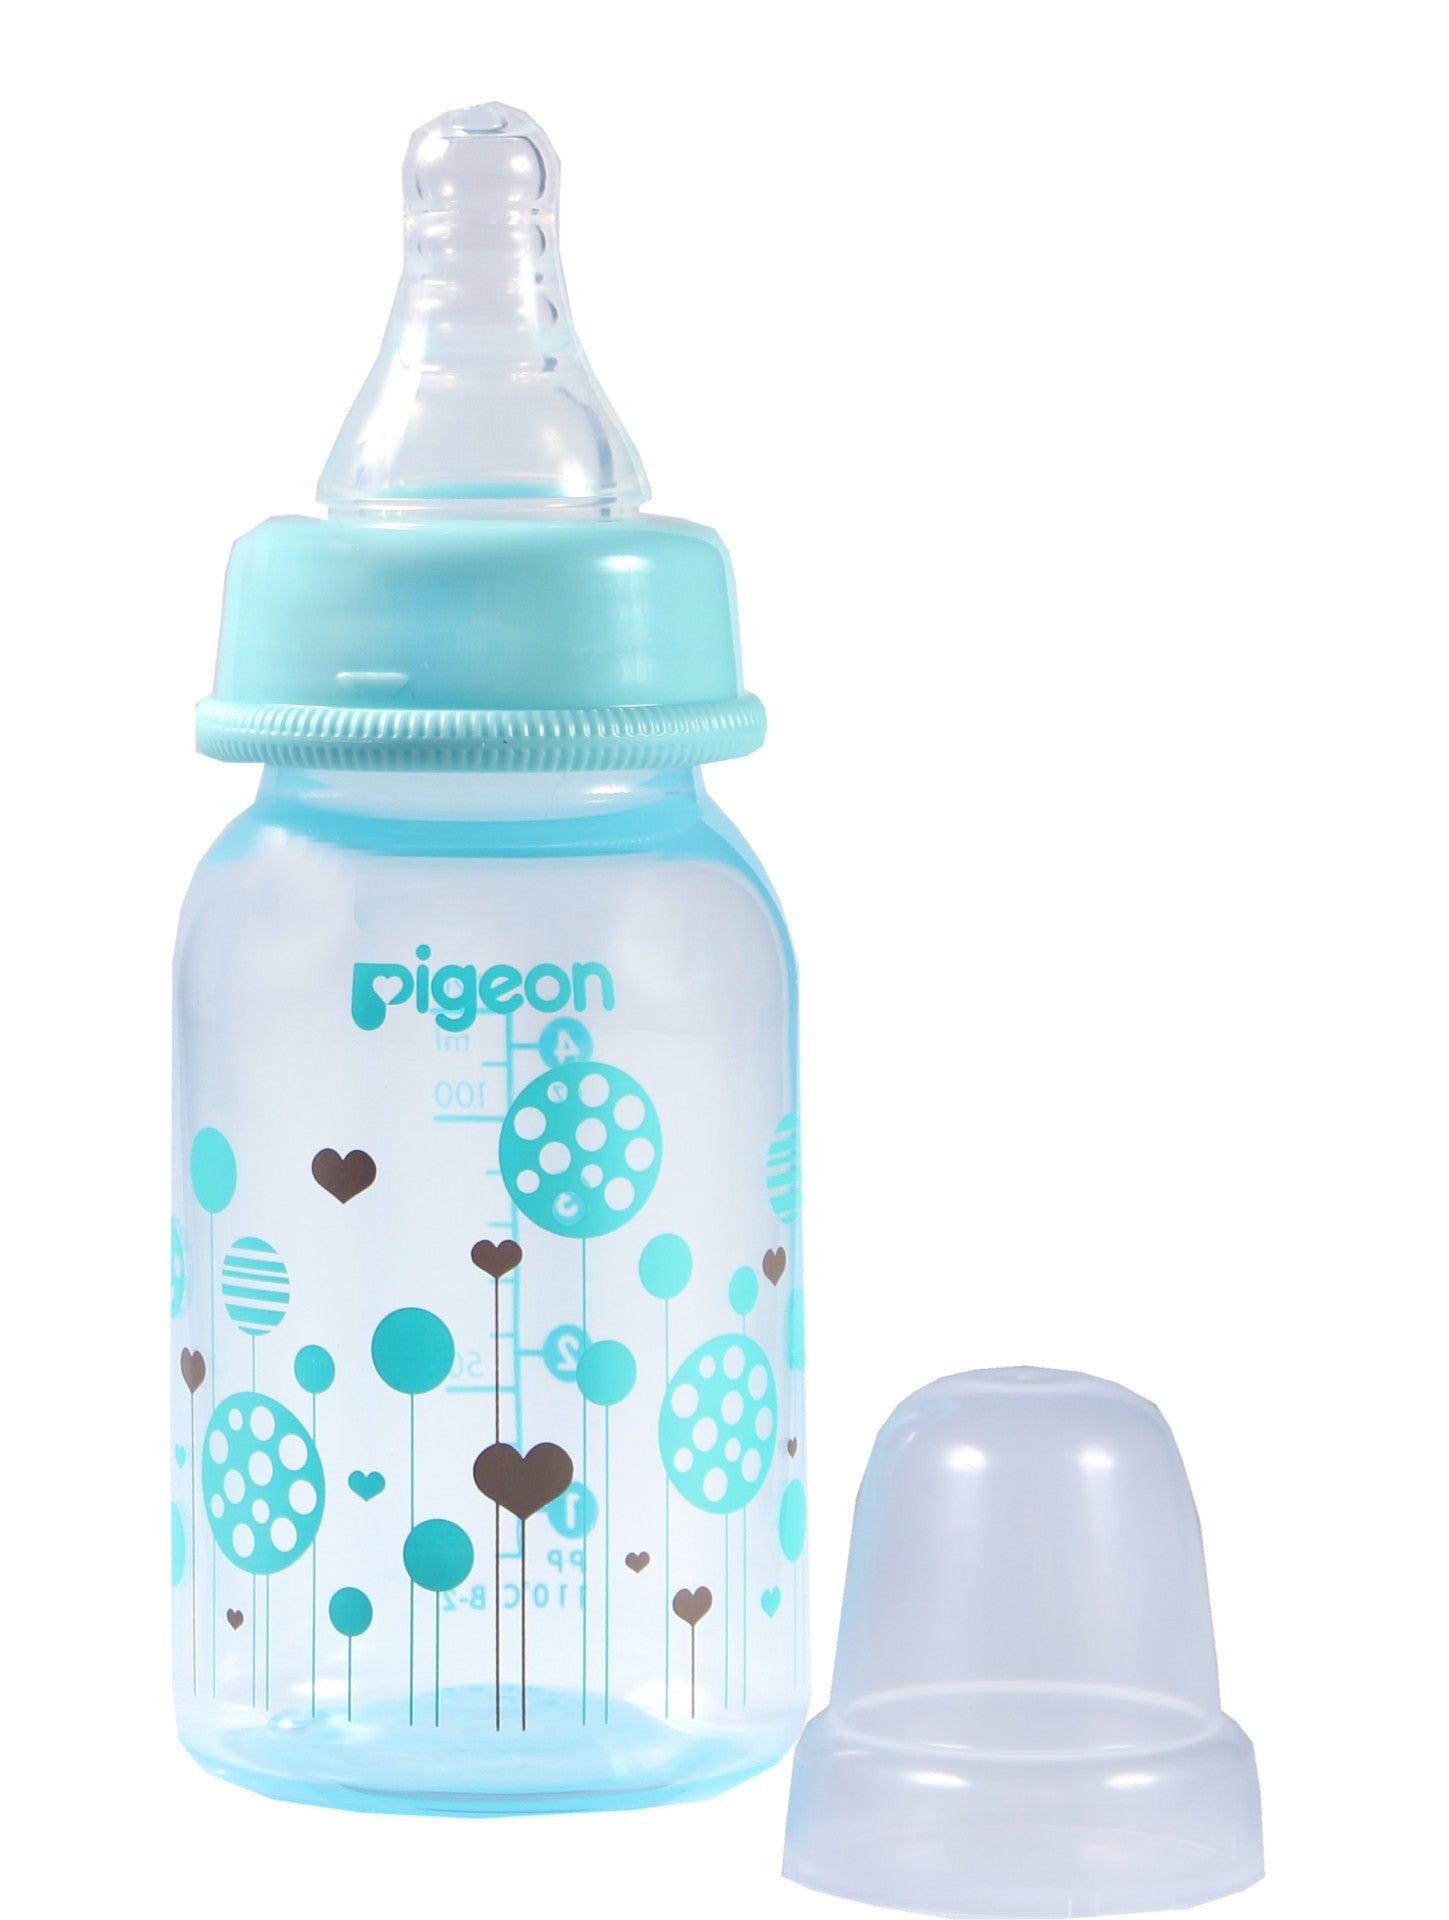 flexible-bottle-standard-neck-pigeon-baby-bottle-i-omninela-medical